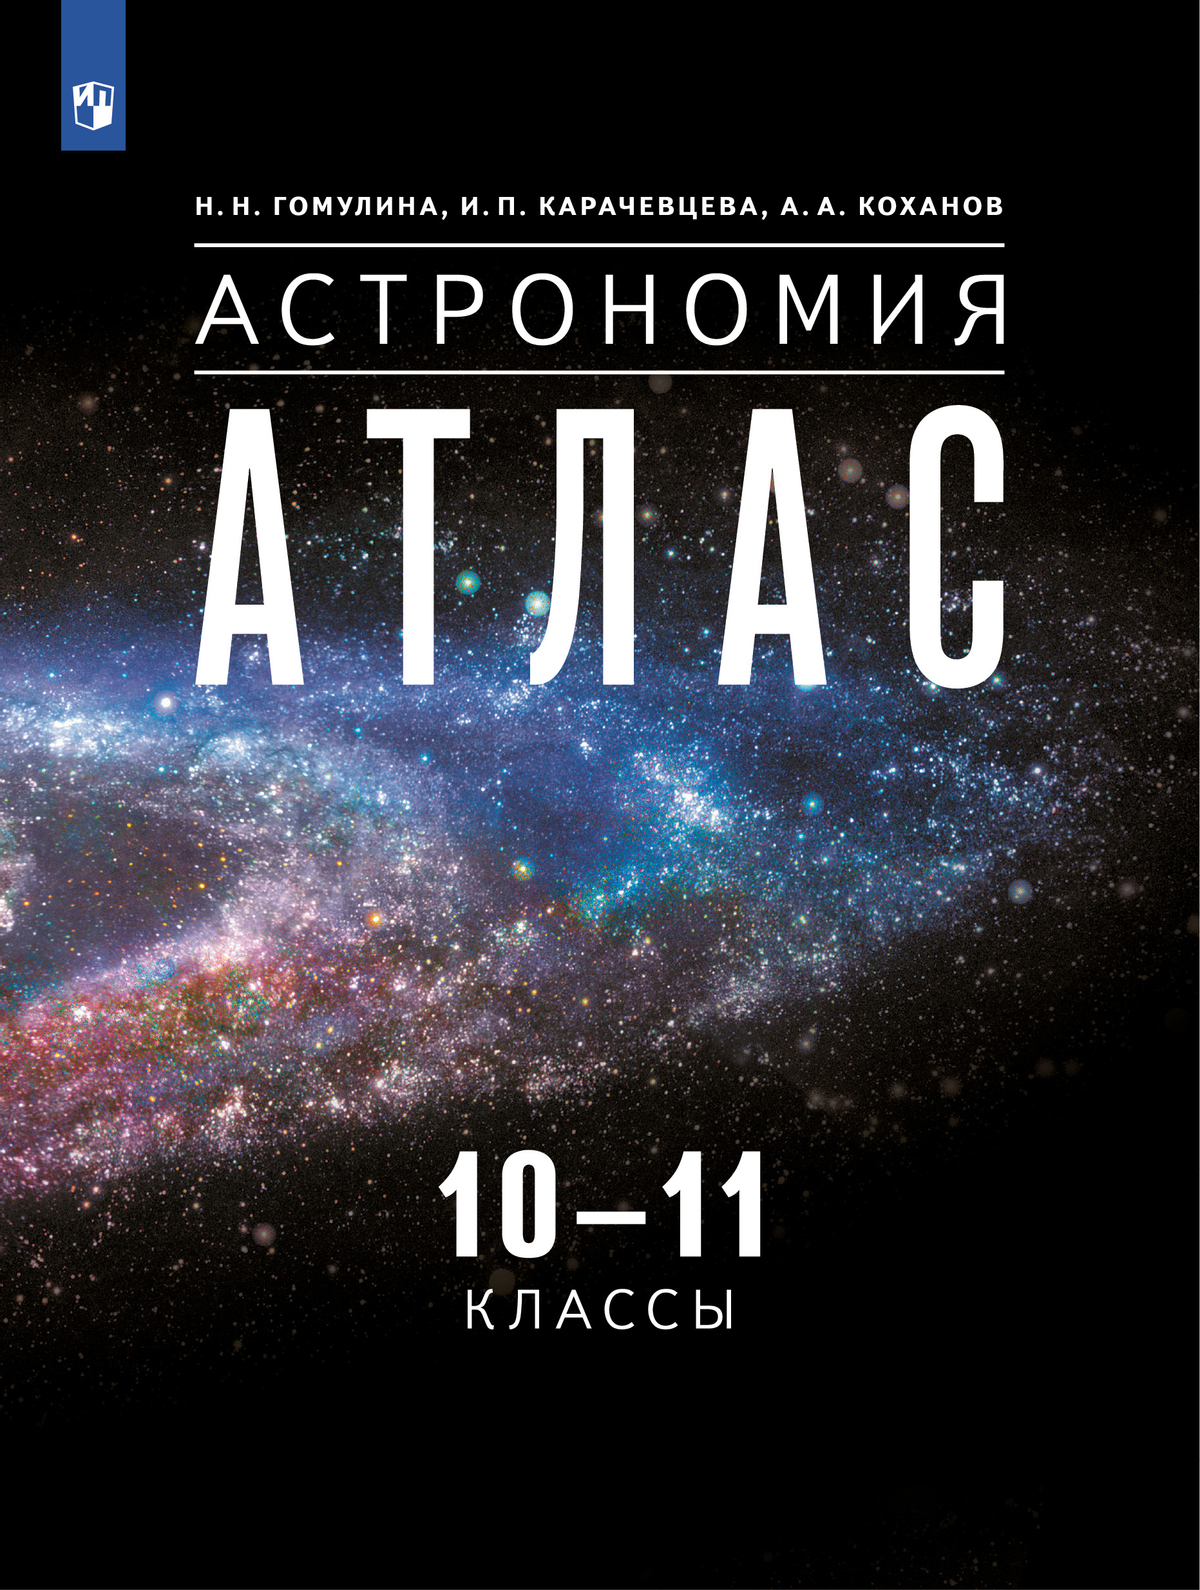 Воронцов-Вельяминов. Астрономия. 10-11 классы. Атлас (Гомулина, Карачевцева, Коханов) 1